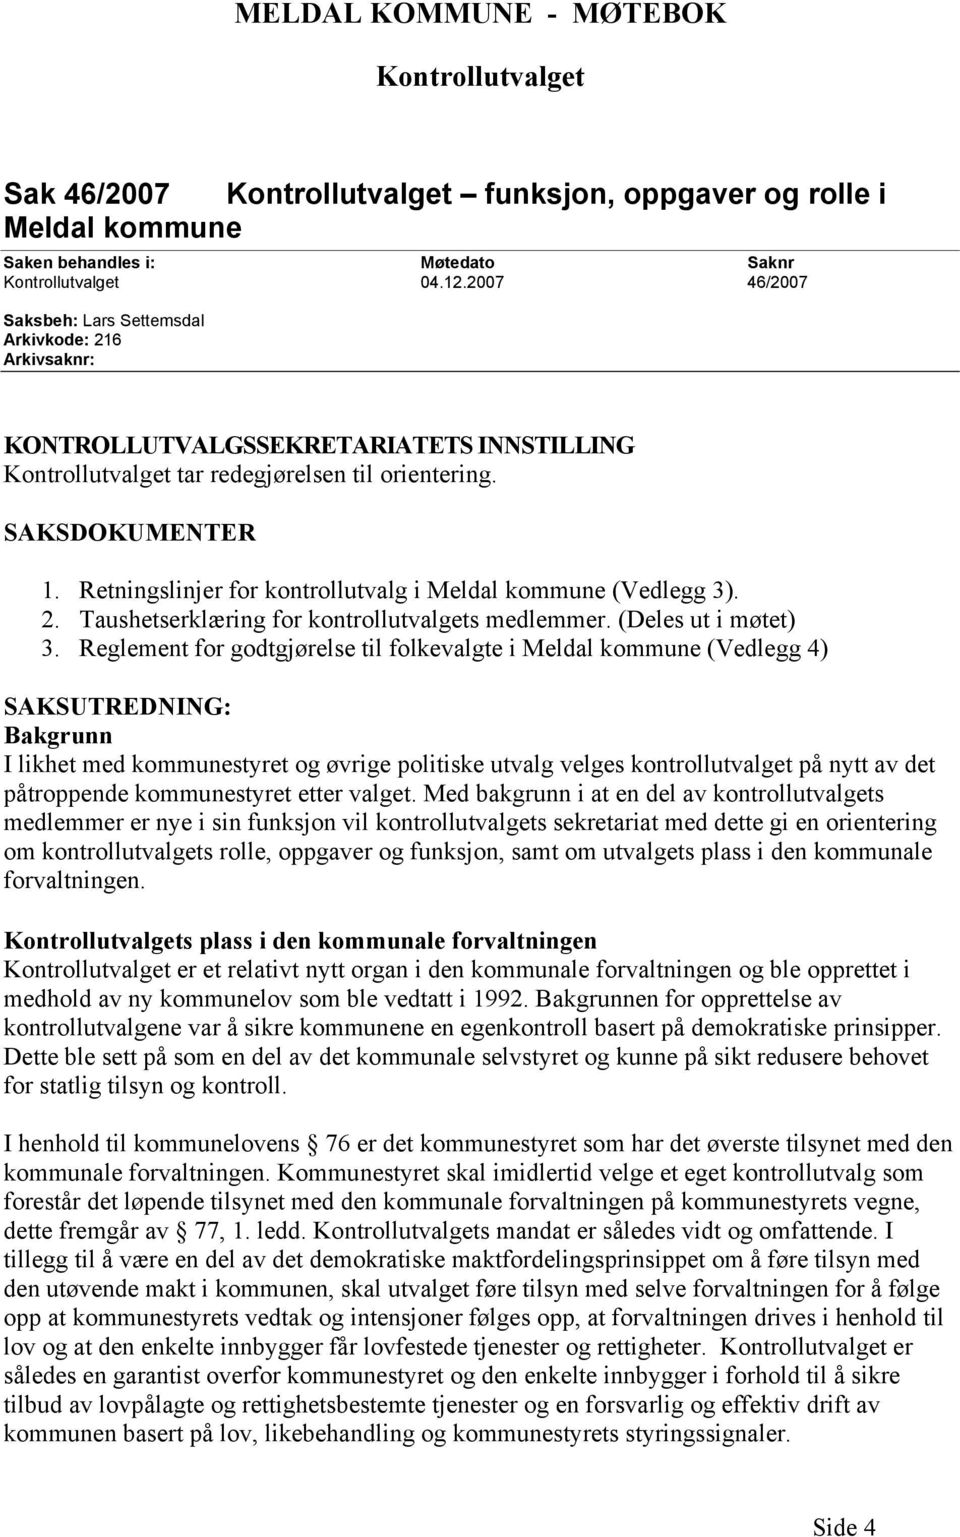 Retningslinjer for kontrollutvalg i Meldal kommune (Vedlegg 3). 2. Taushetserklæring for kontrollutvalgets medlemmer. (Deles ut i møtet) 3.